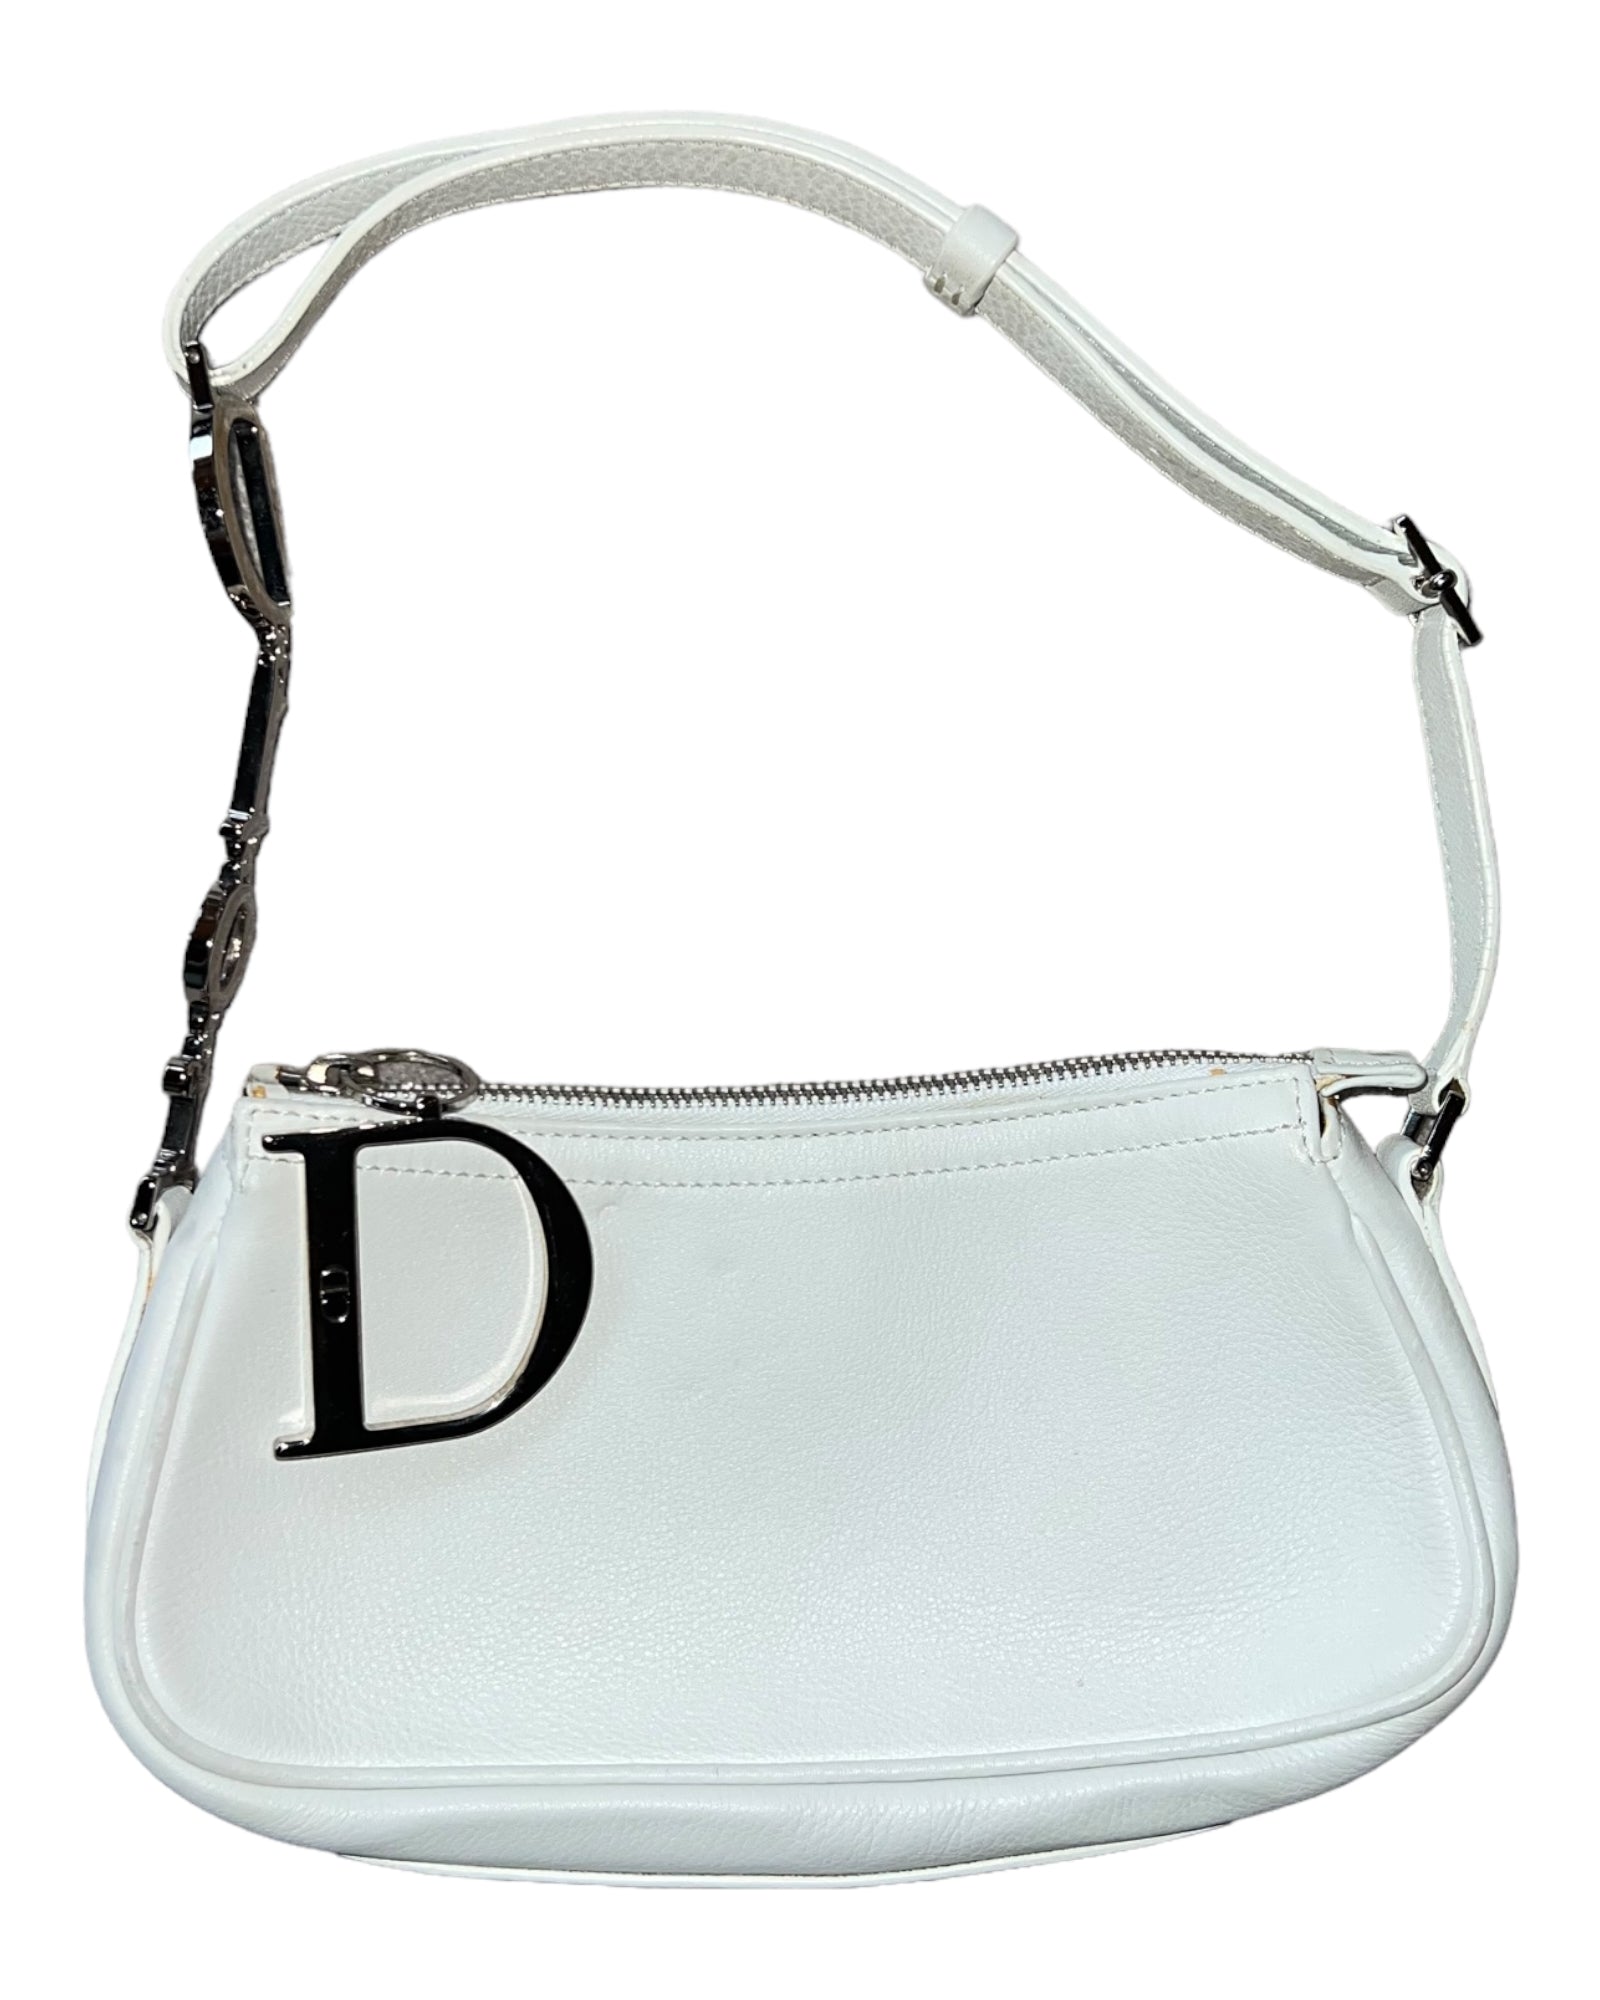 Dior, Bags, Dior Charm Pouchette John Galliano